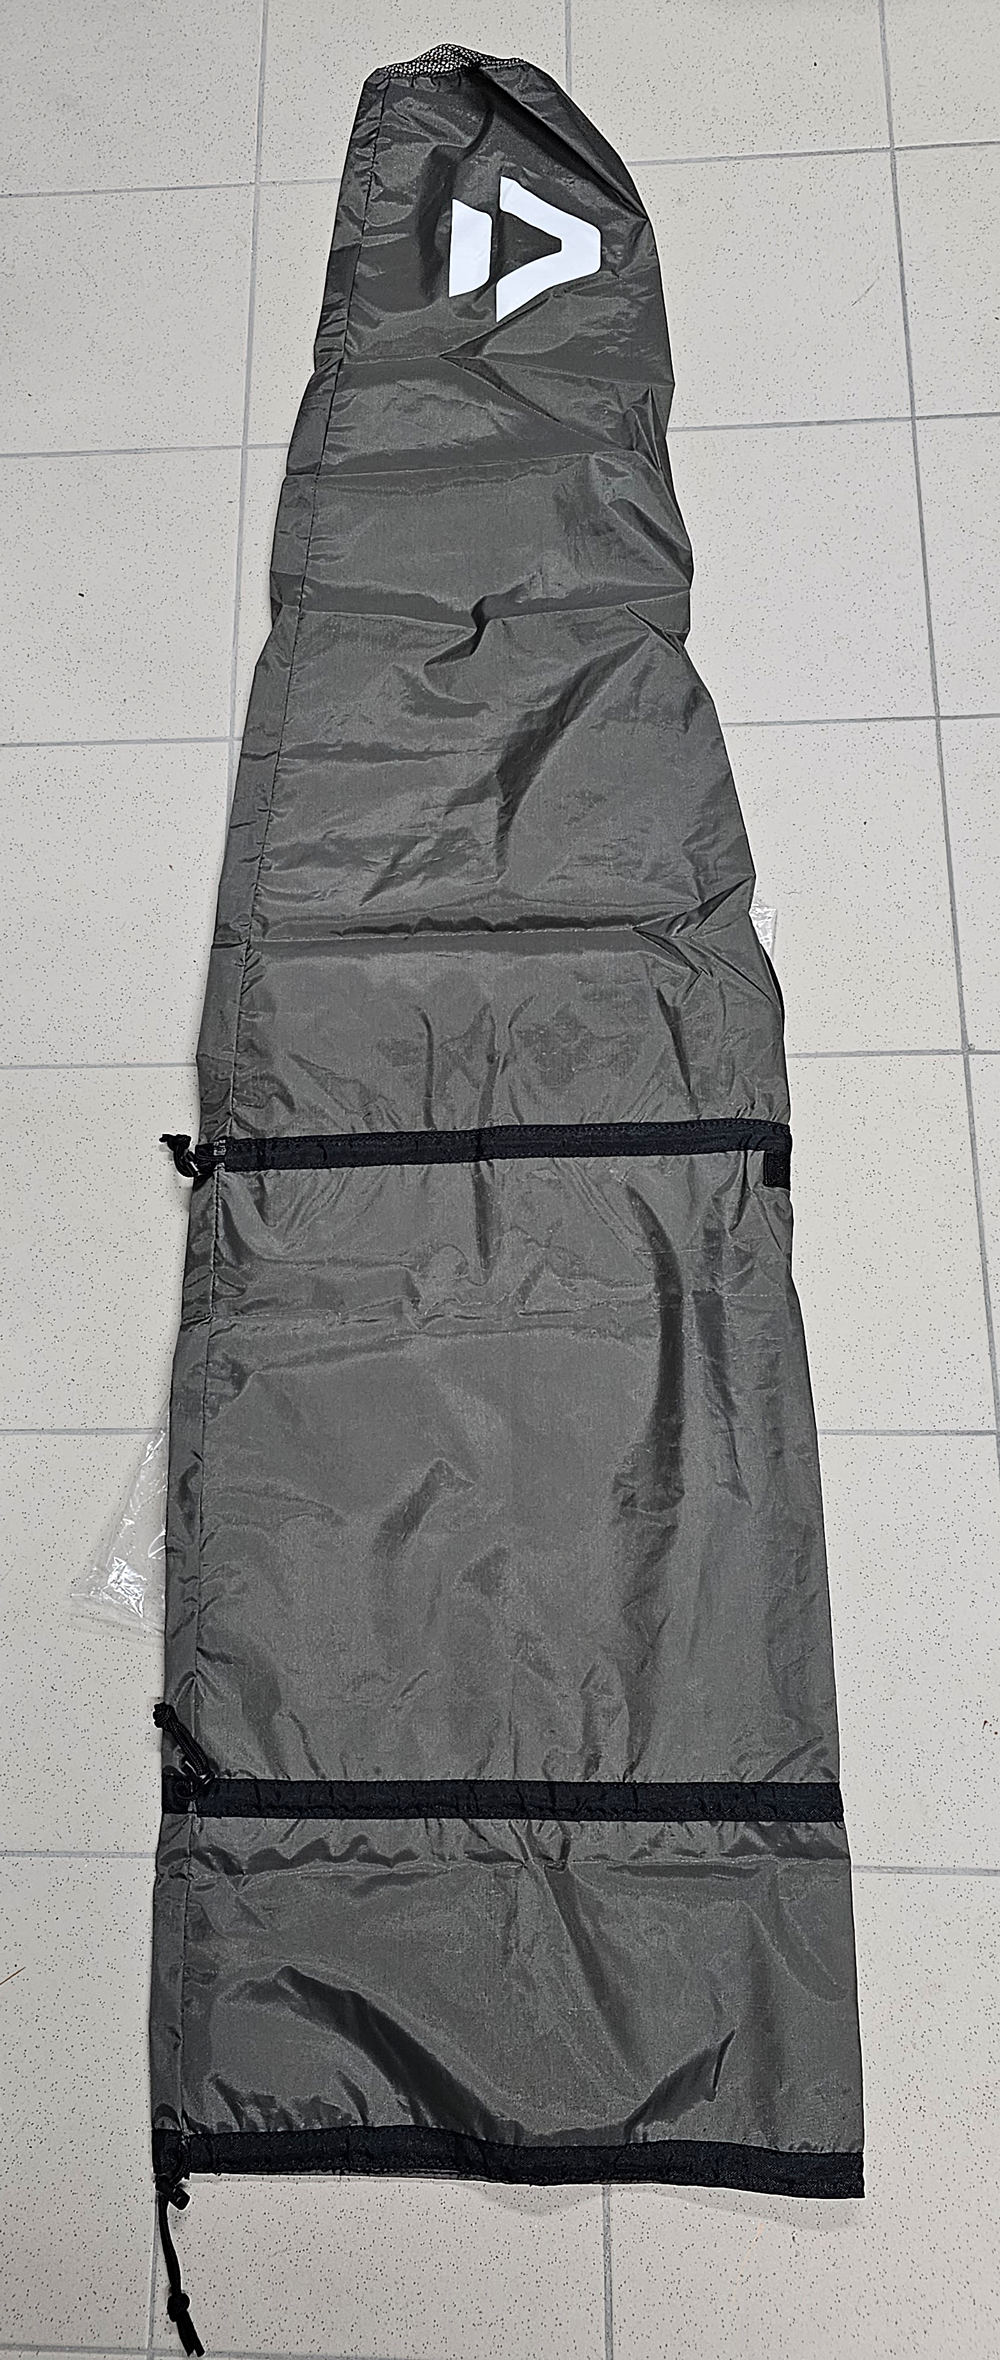 DT Extension Kite Bag - Packsack für Kites - Duotone Kitebag zum Verlängern - grau oder schwarz